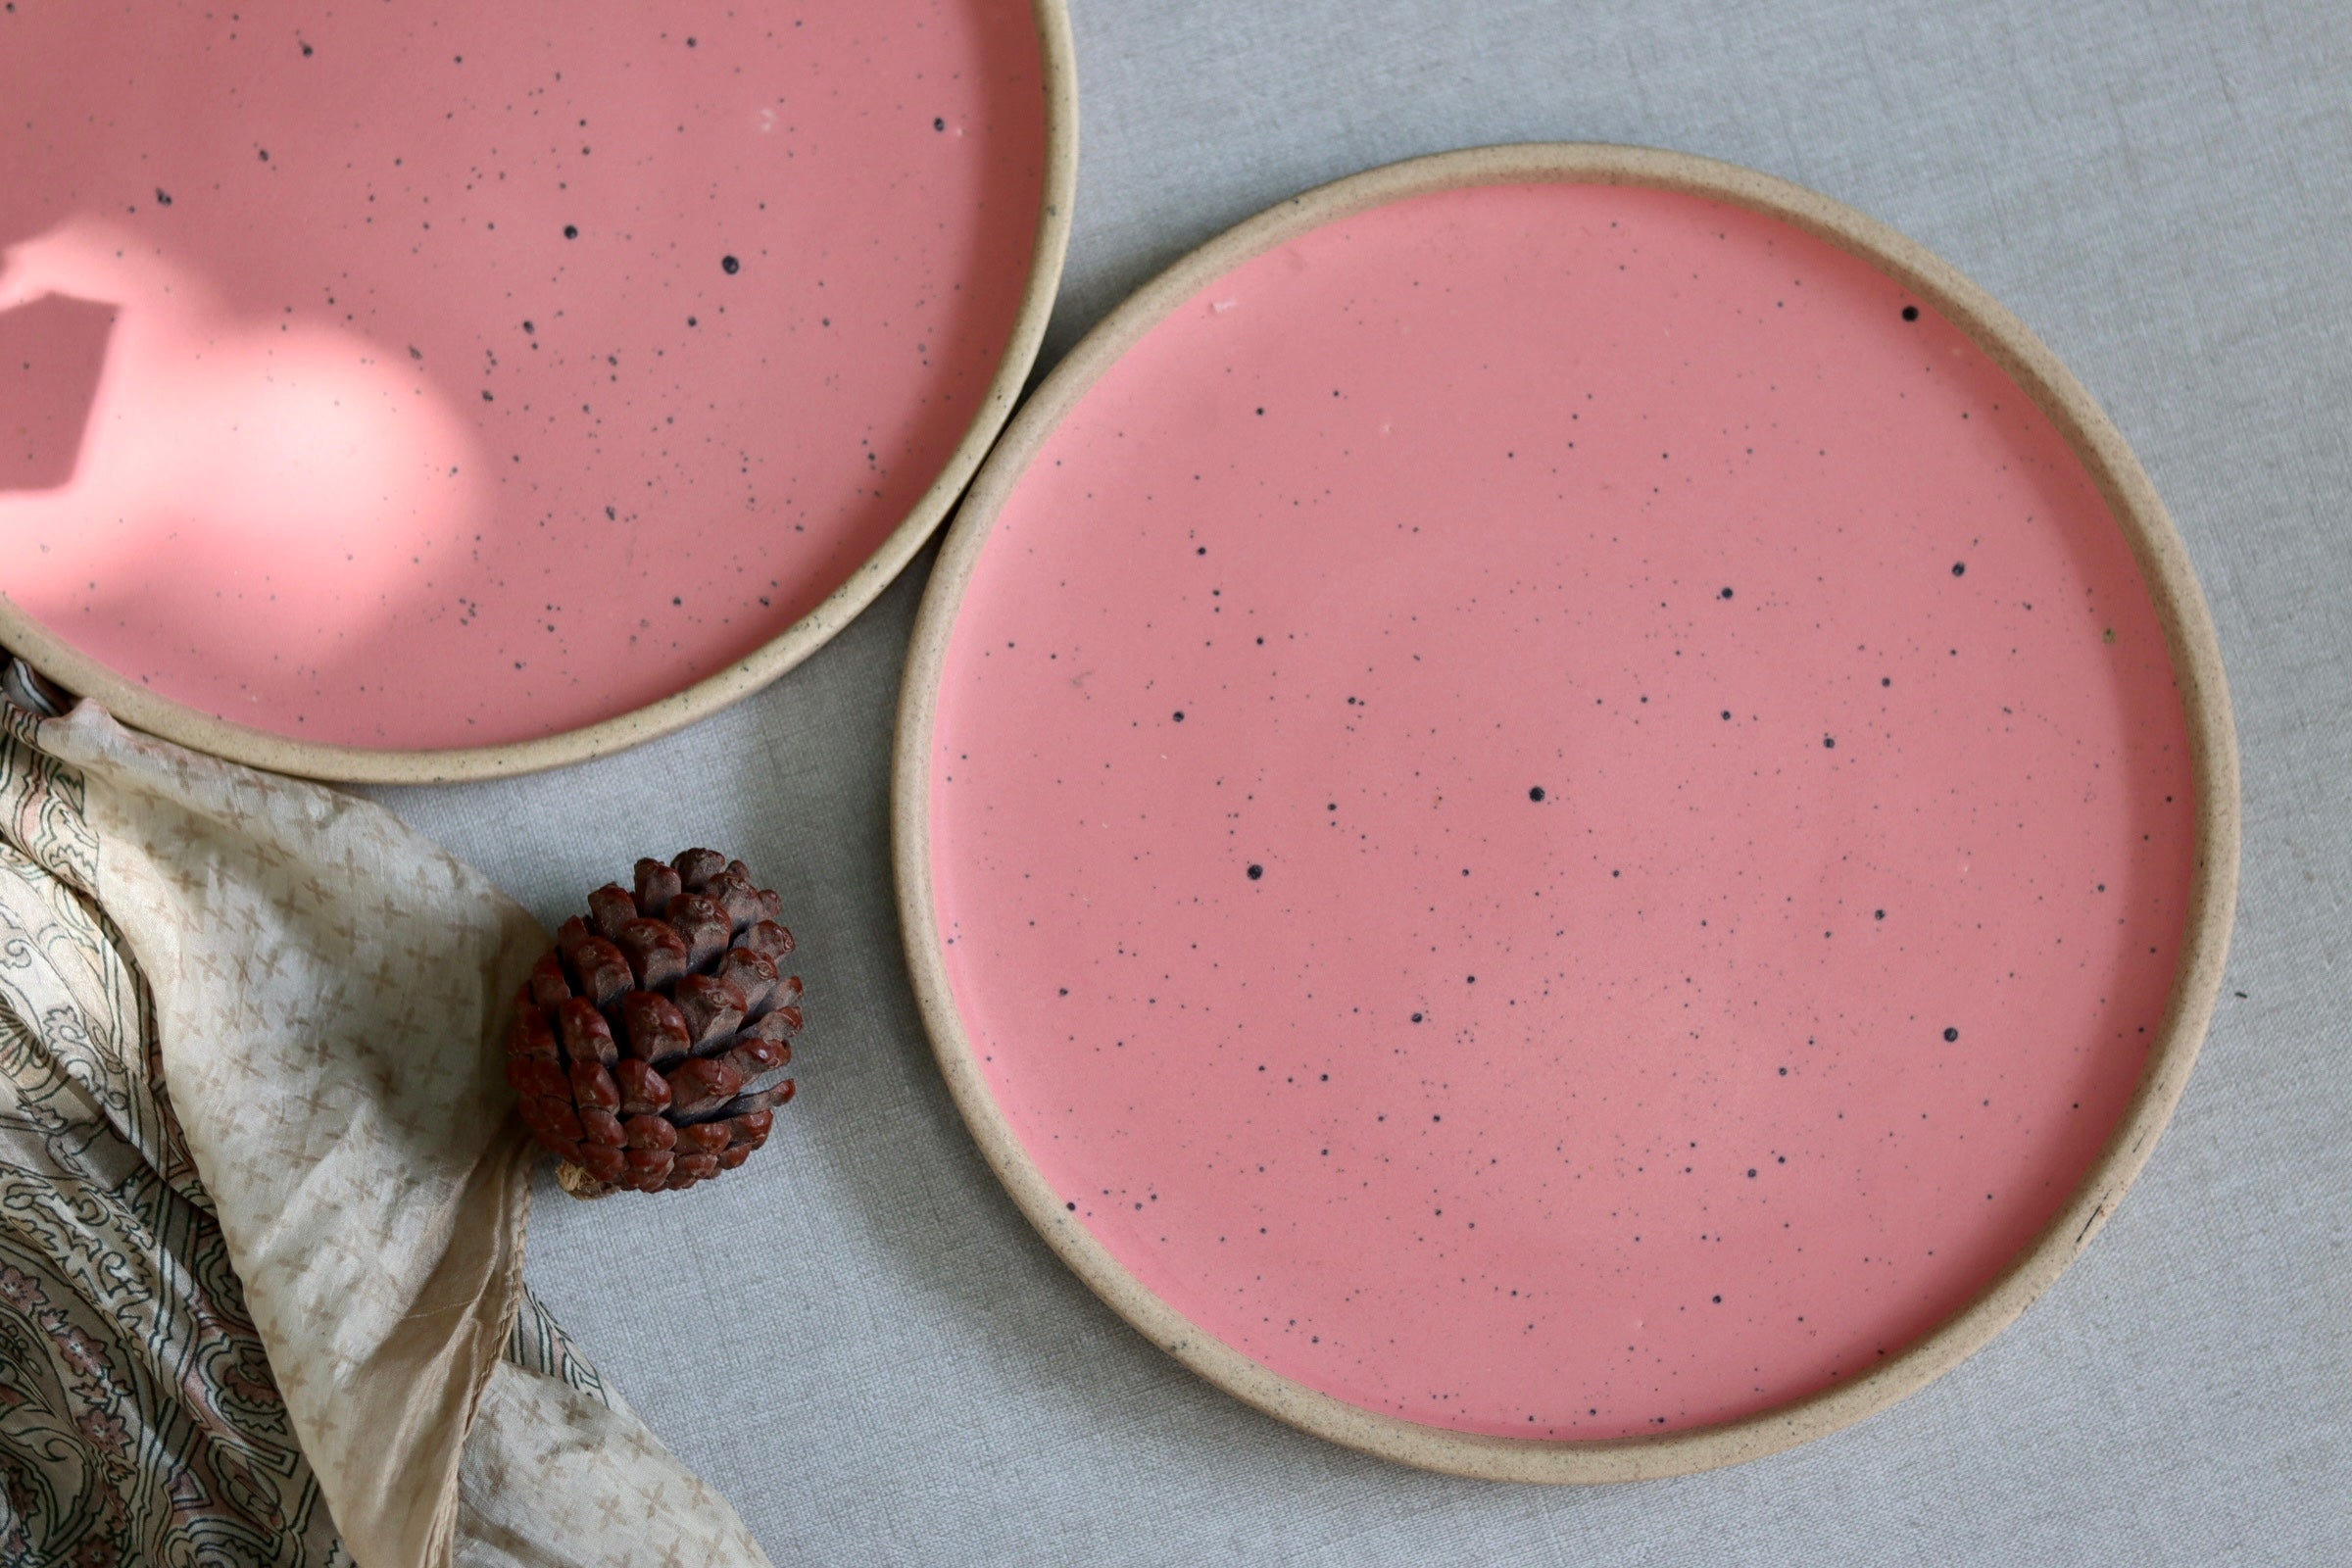 Top shot of pink ceramic plate